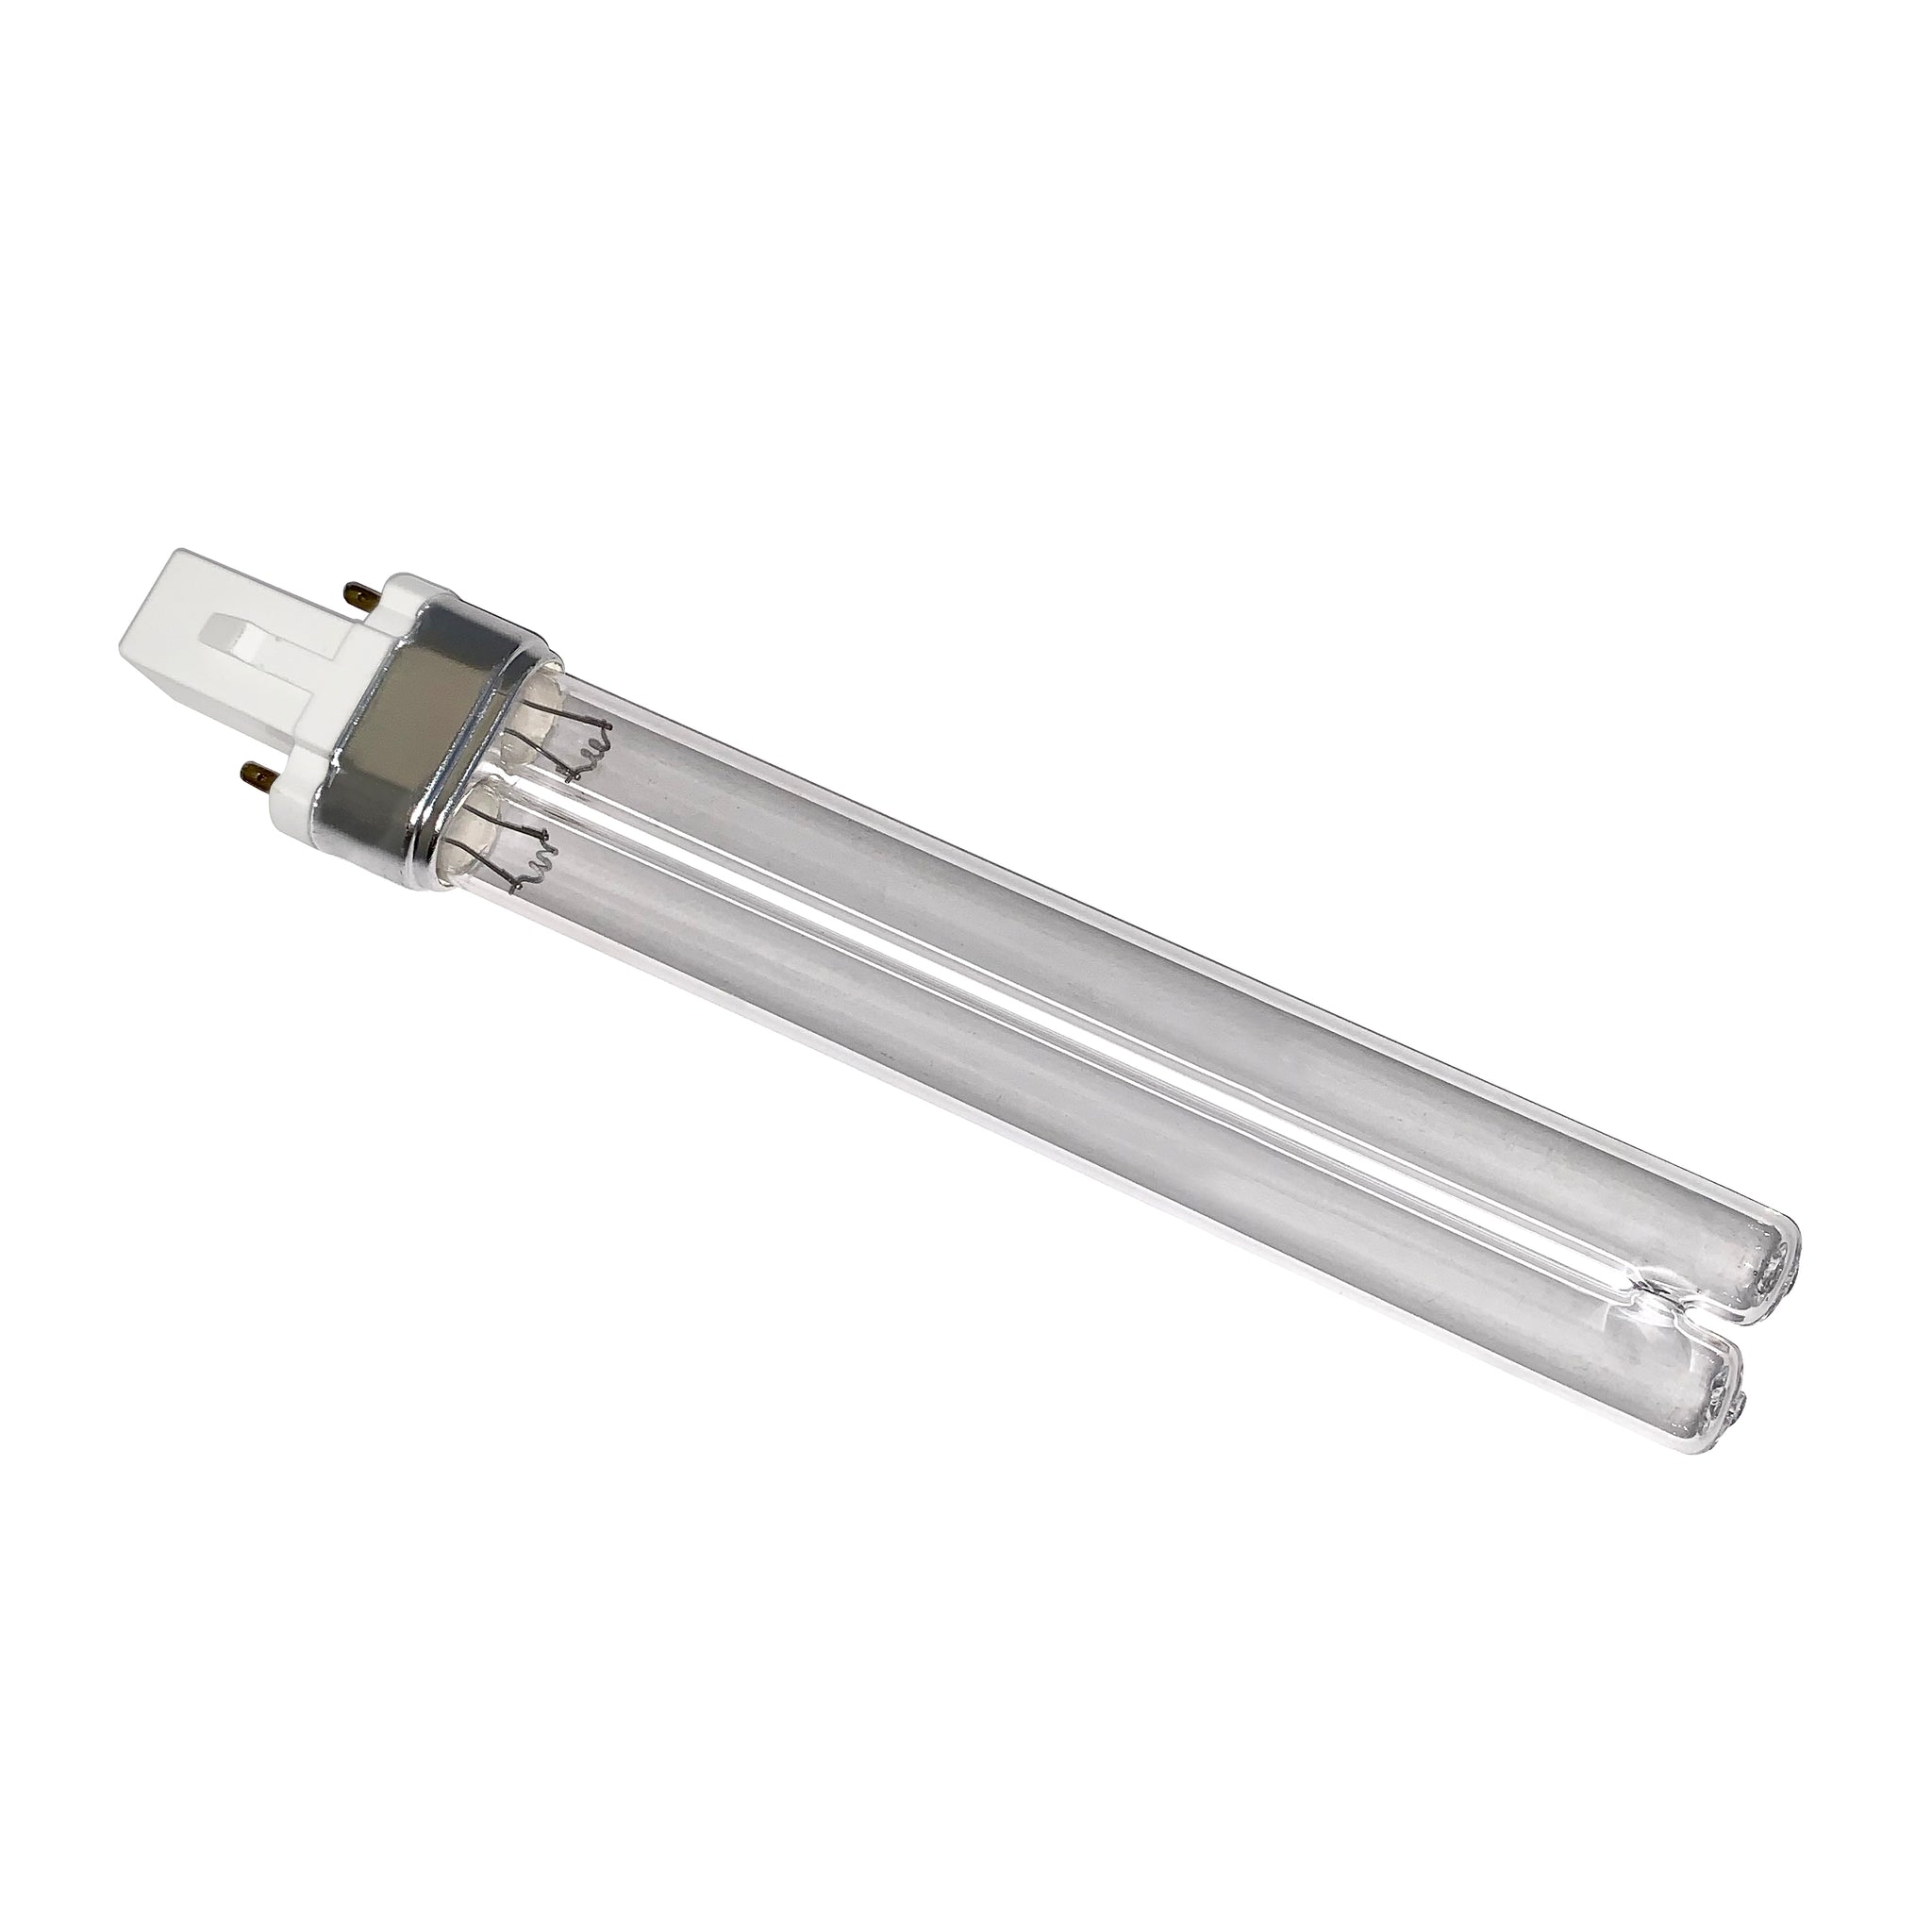 13 WATT CPF UV CLARIFIER REPLACEMENT LAMP